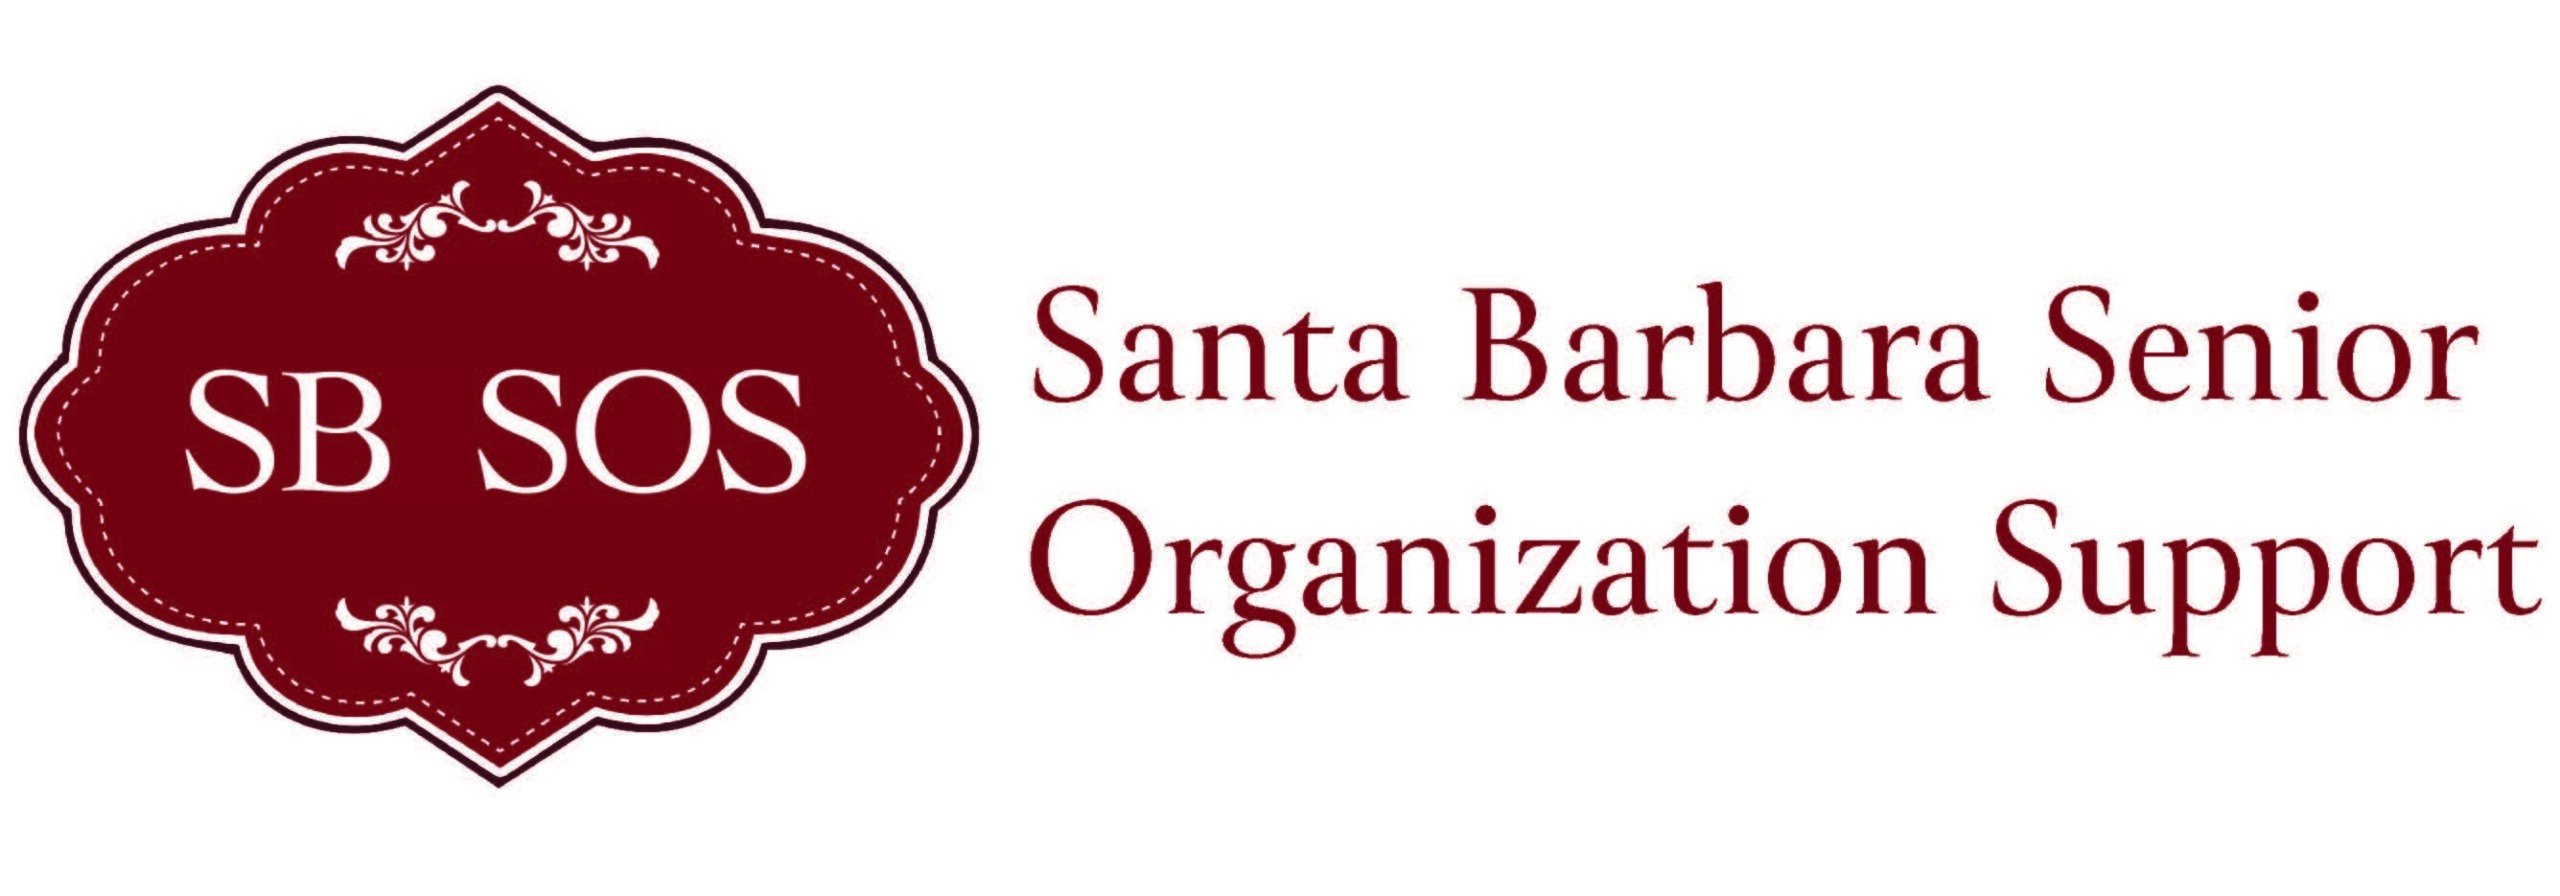 Santa Barbara Senior Organization Support